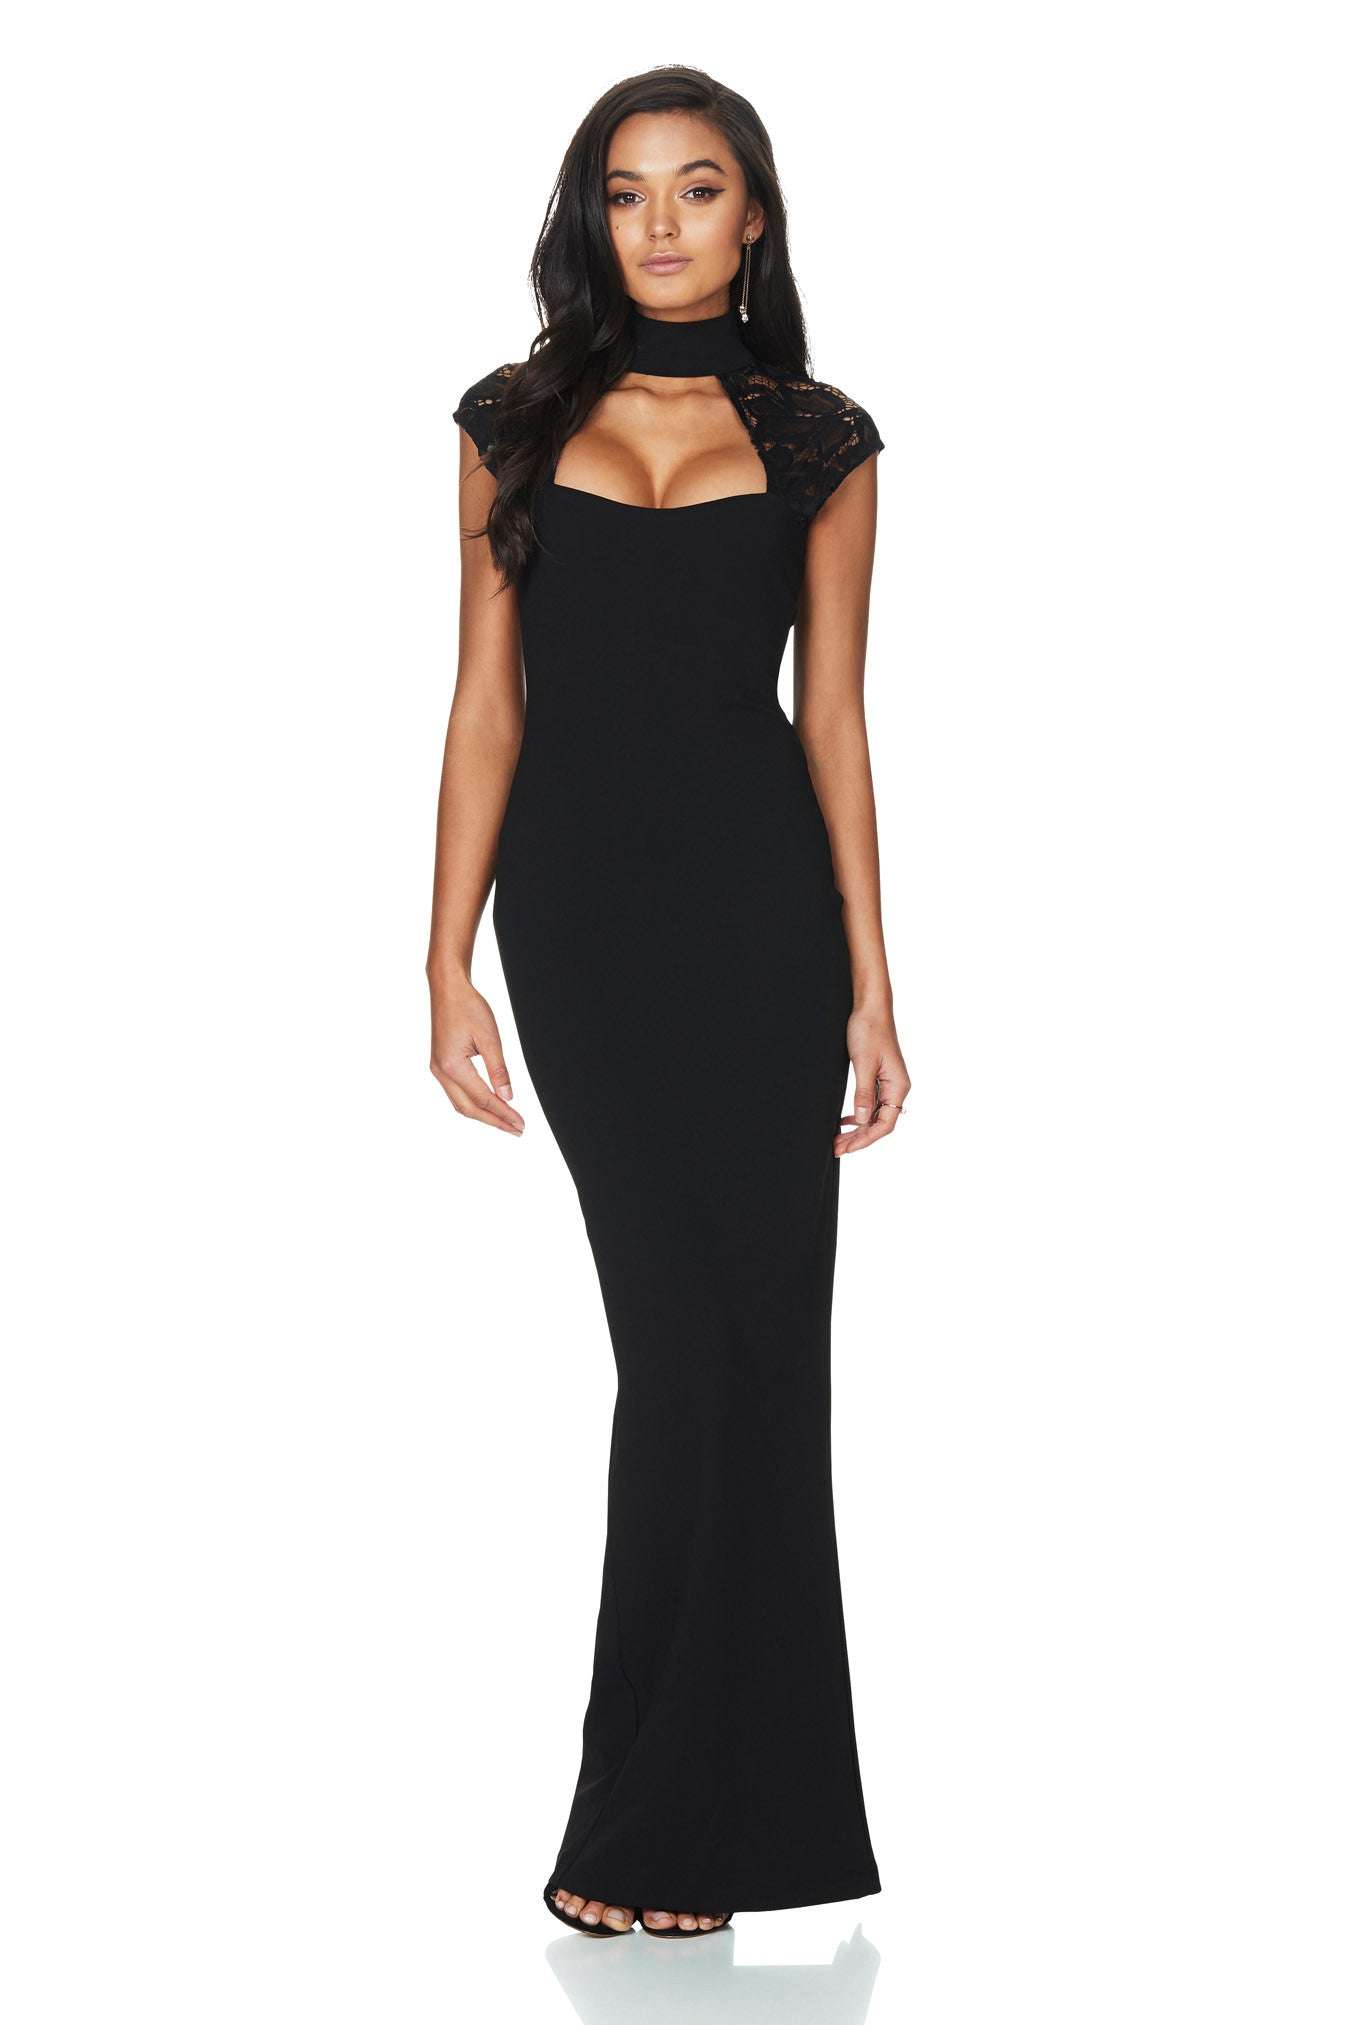 Nookie NOOKIE Lady Lace Dress (Black)- RRP $259 - nookie-lady-lace-dress-black--rrp-9-dress-for-a-night-30755602.jpg